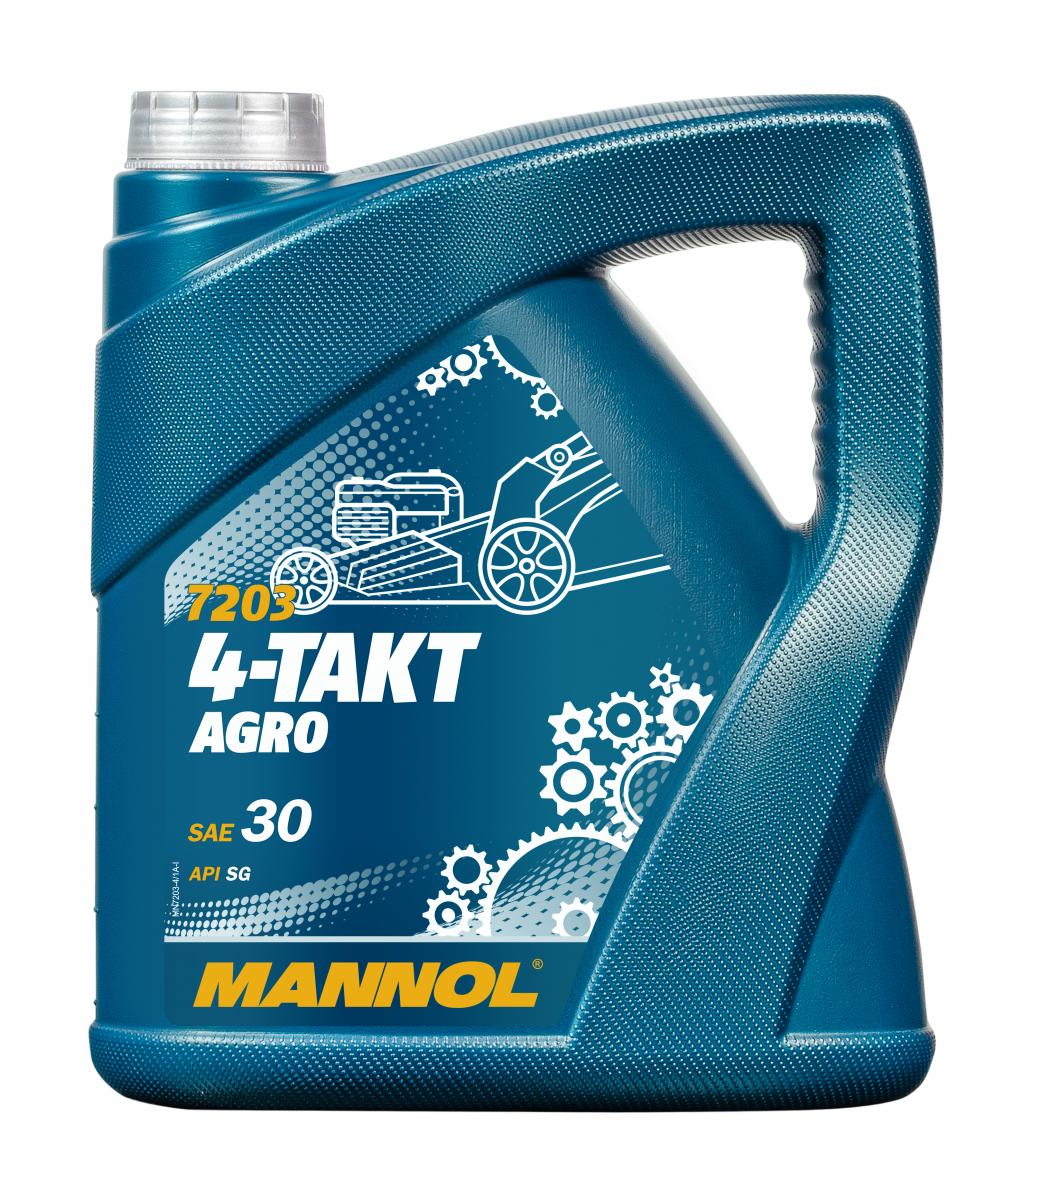 4 Liter MANNOL 4-Takt Agro 7203 SAE 30 API SL Motoröl für Gartengeräte 